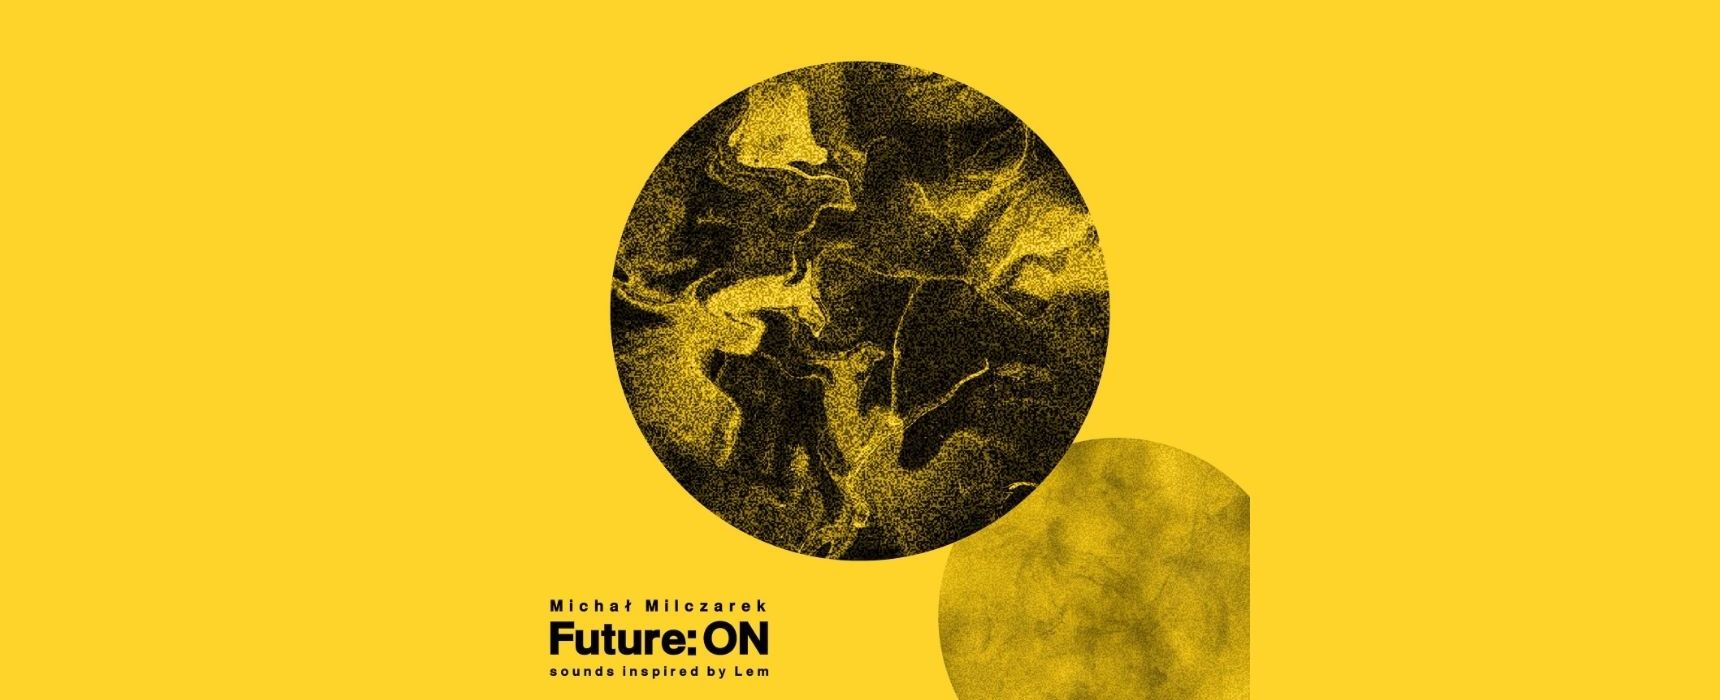 [wt. 13:00] Michał Milczarek o projekcie „Future: ON. sounds inspired by Lem”